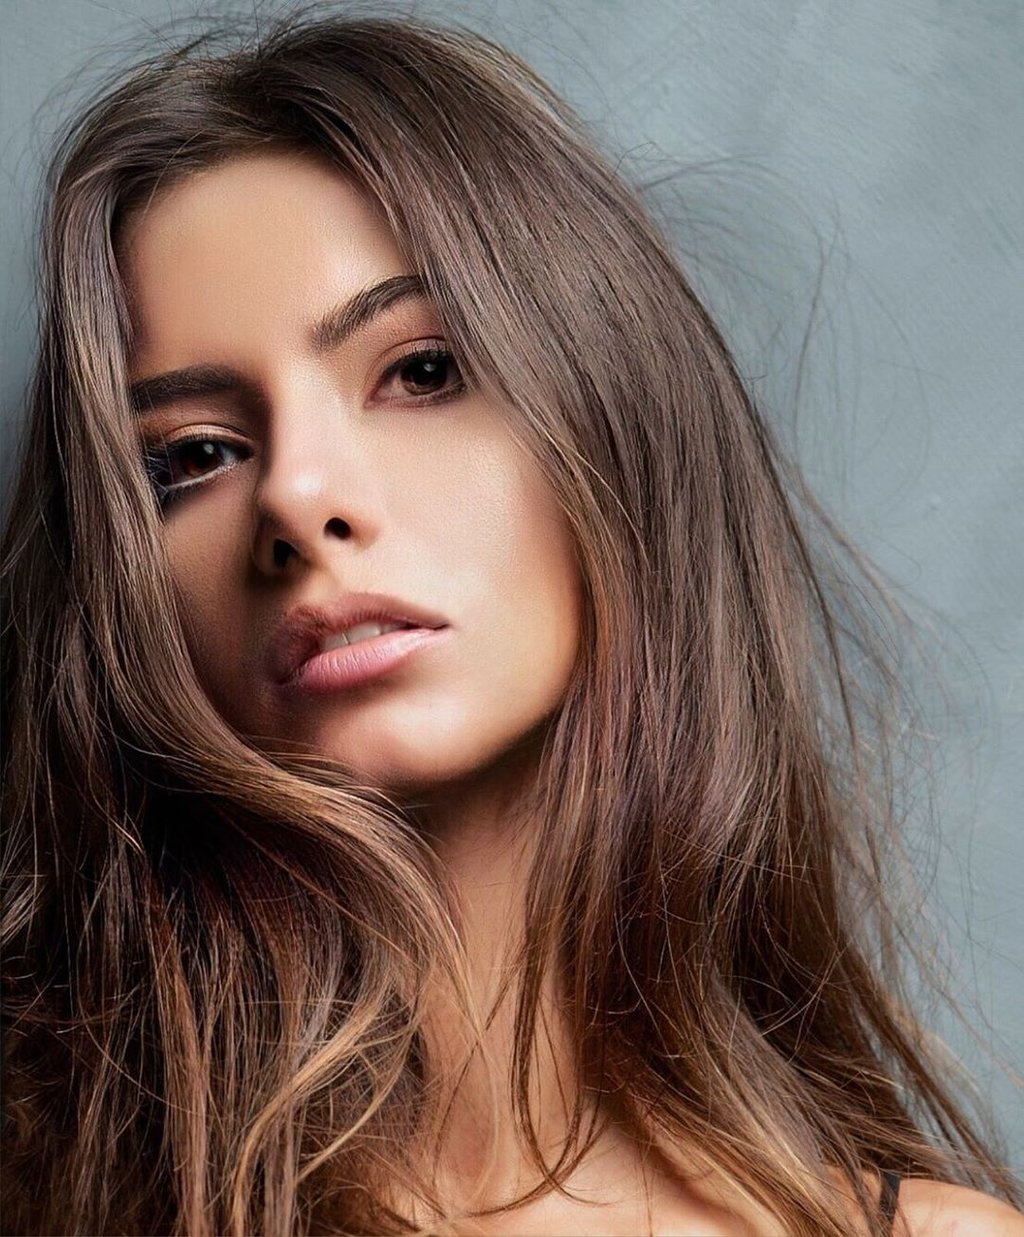 Türk güzeller büyüledi! İşte son 10 yılın Miss Turkey birincileri